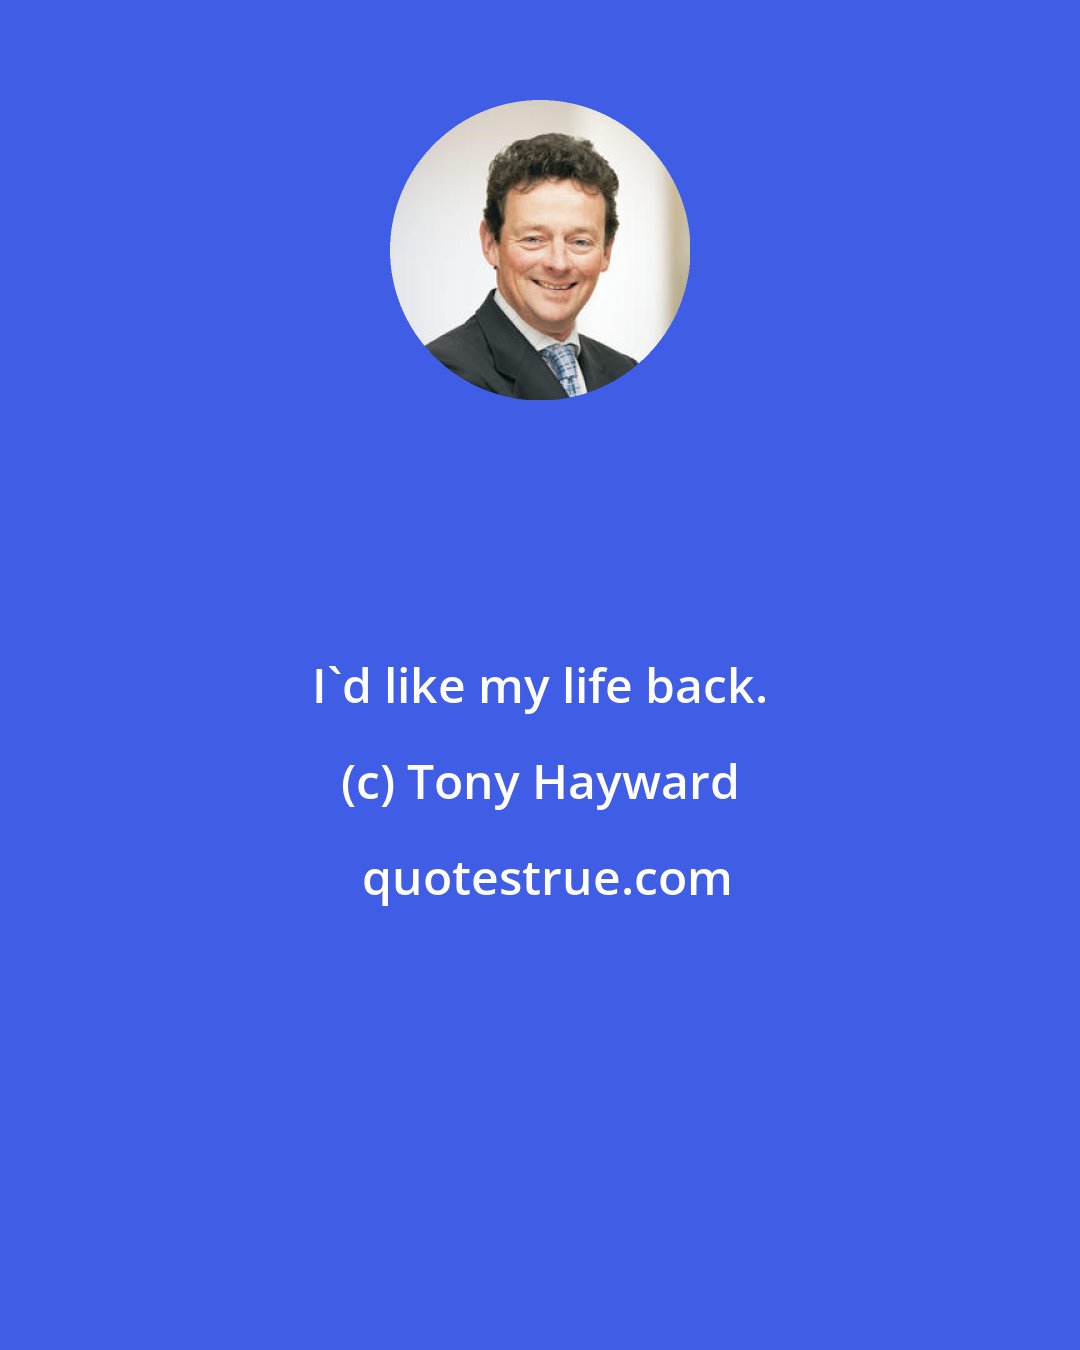 Tony Hayward: I'd like my life back.